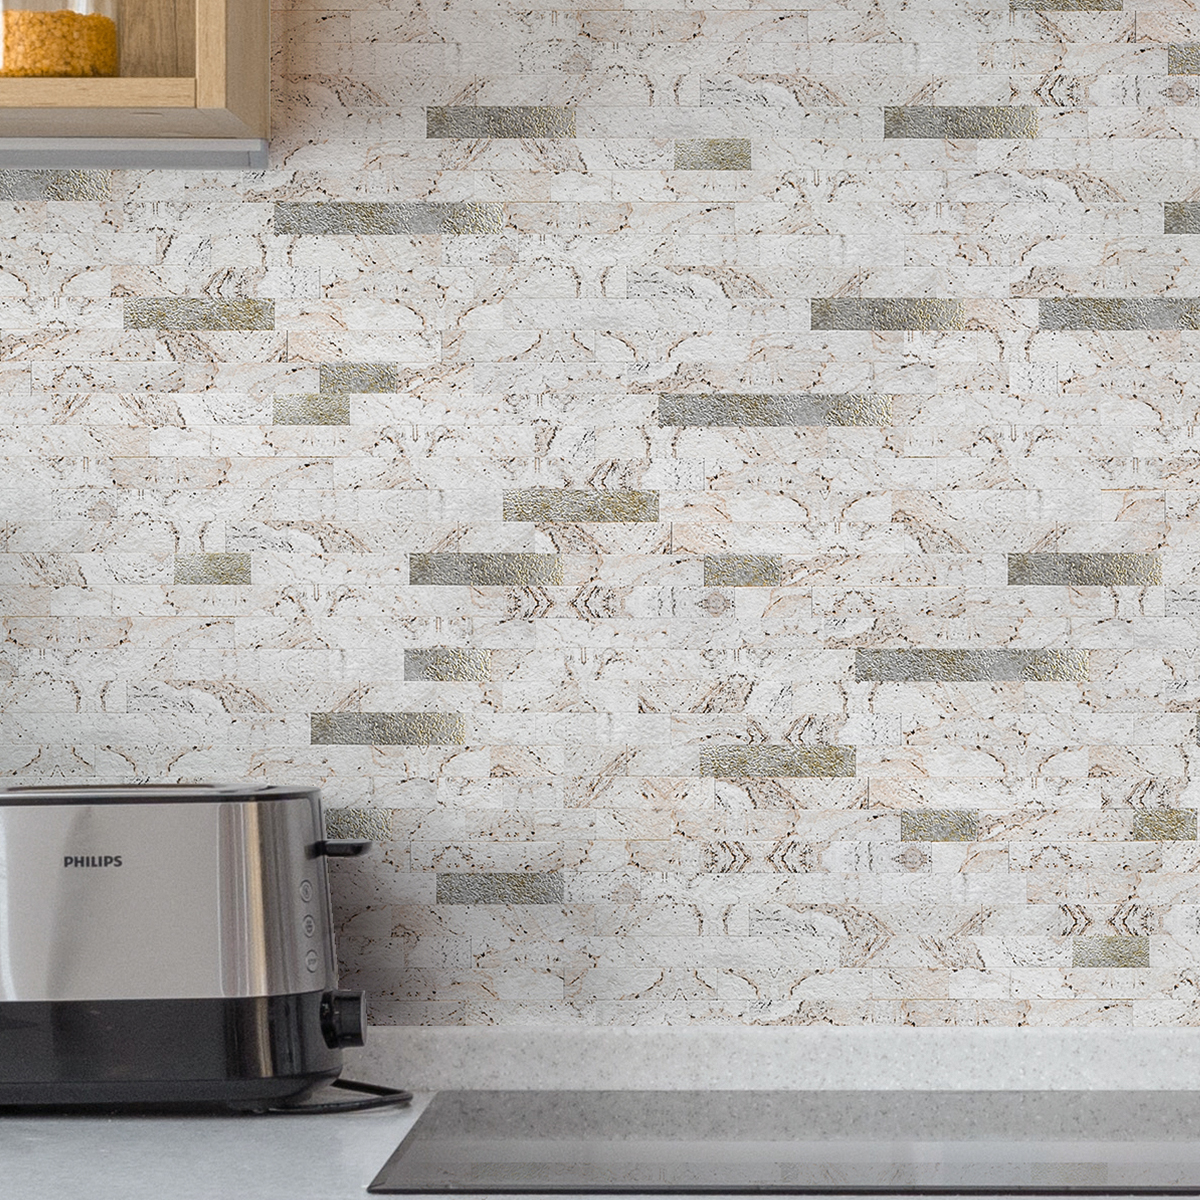 Art3d 10-Sheet PVC Peel and Stick Collage Tile for Kitchen  Backsplash,Bathroom - Dark Slat